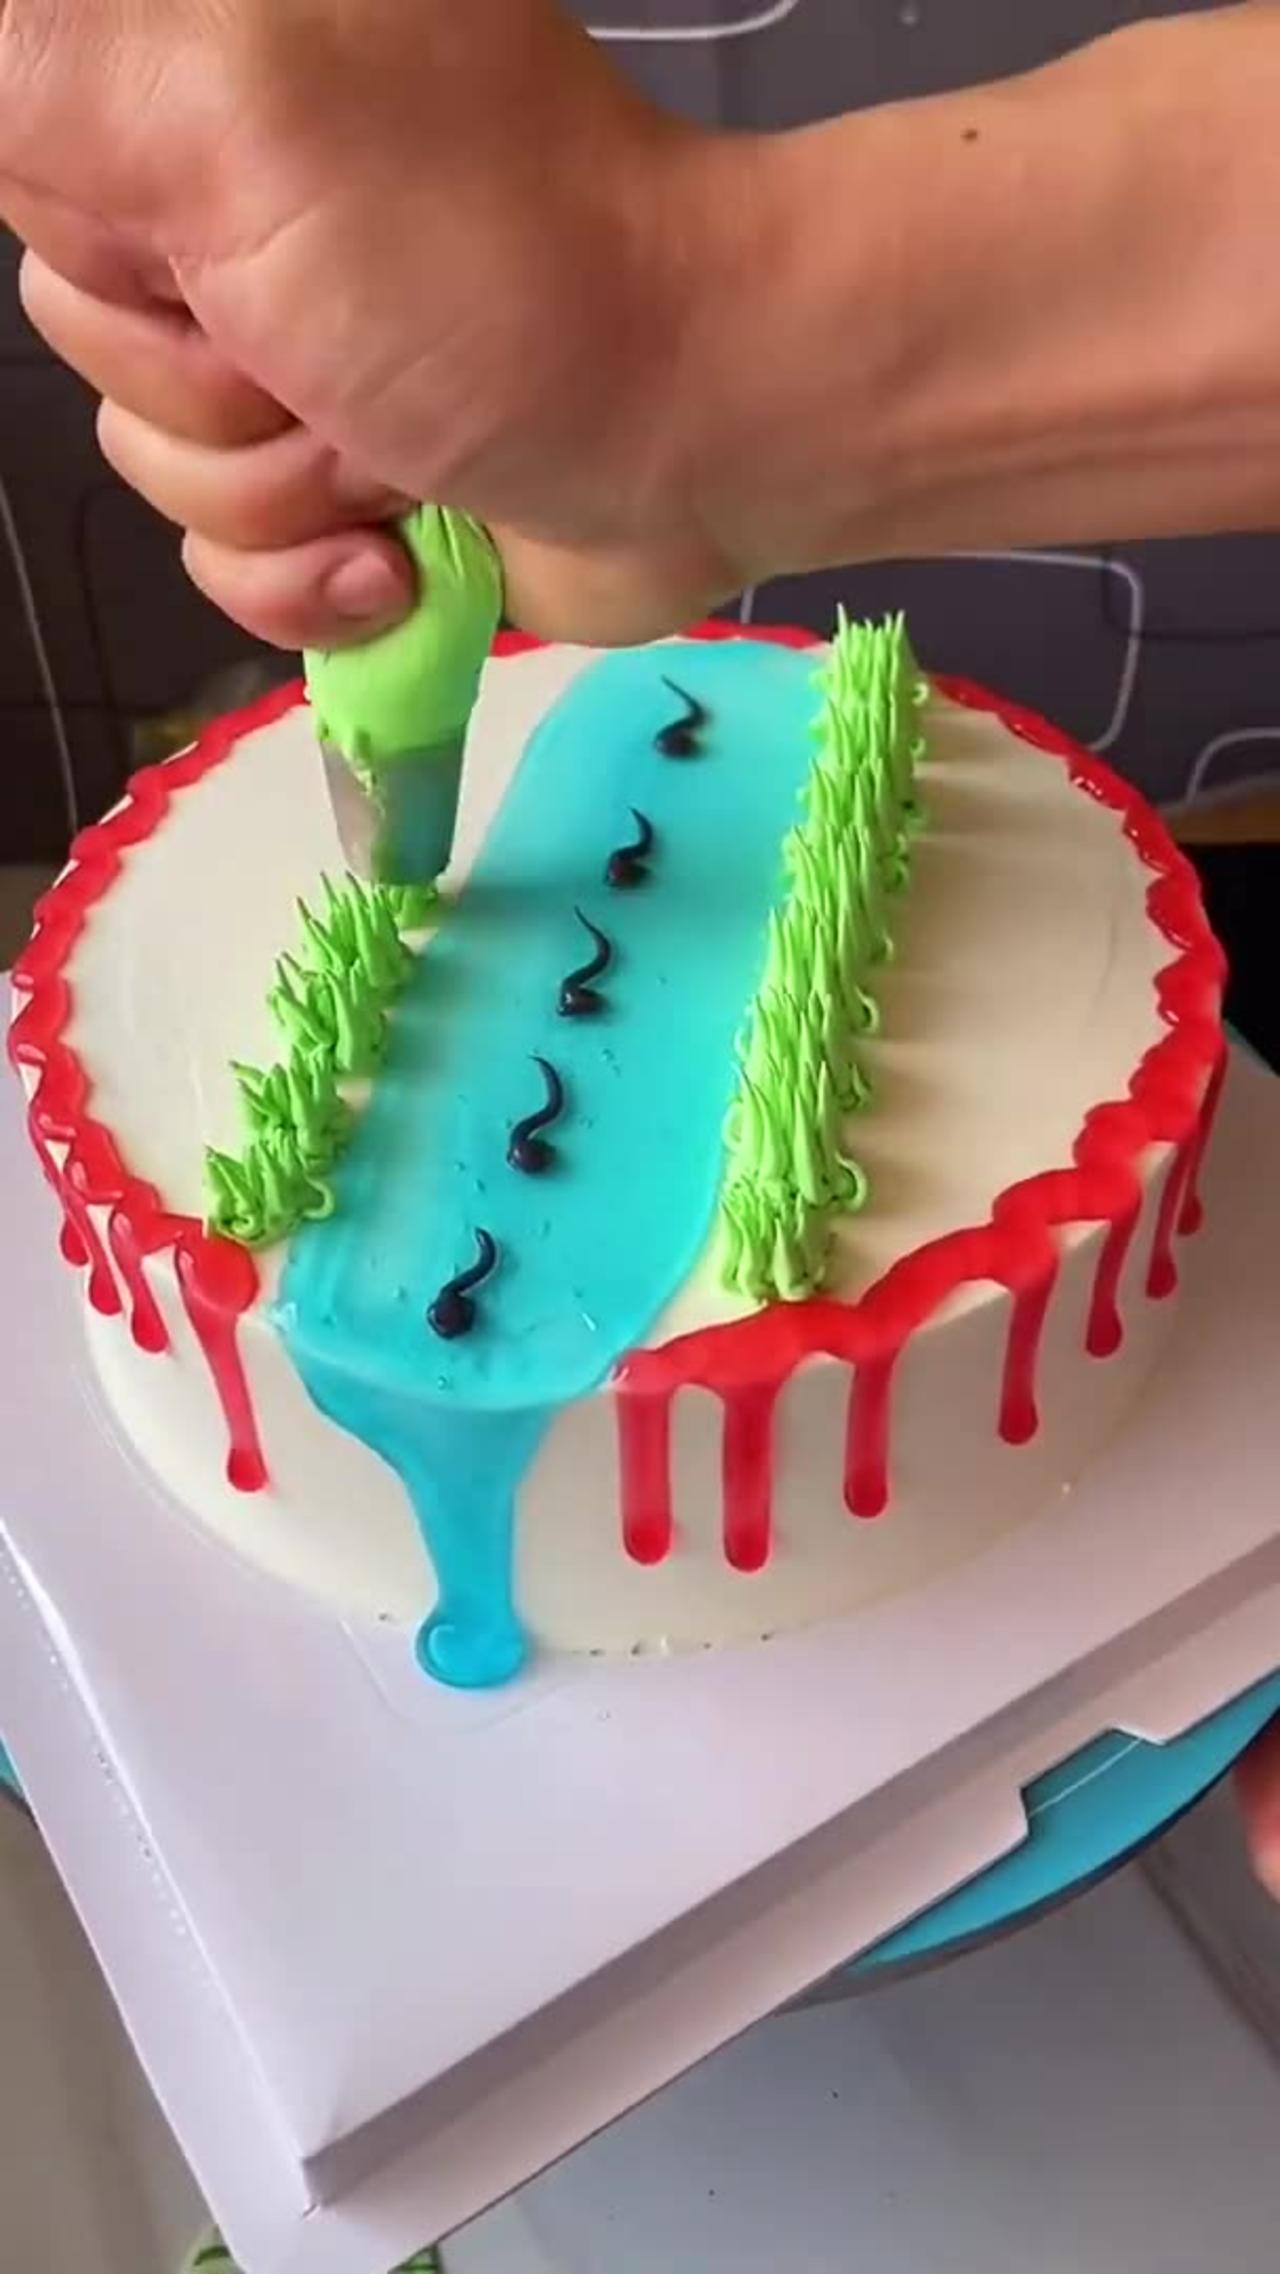 Amazing Food Making Cake